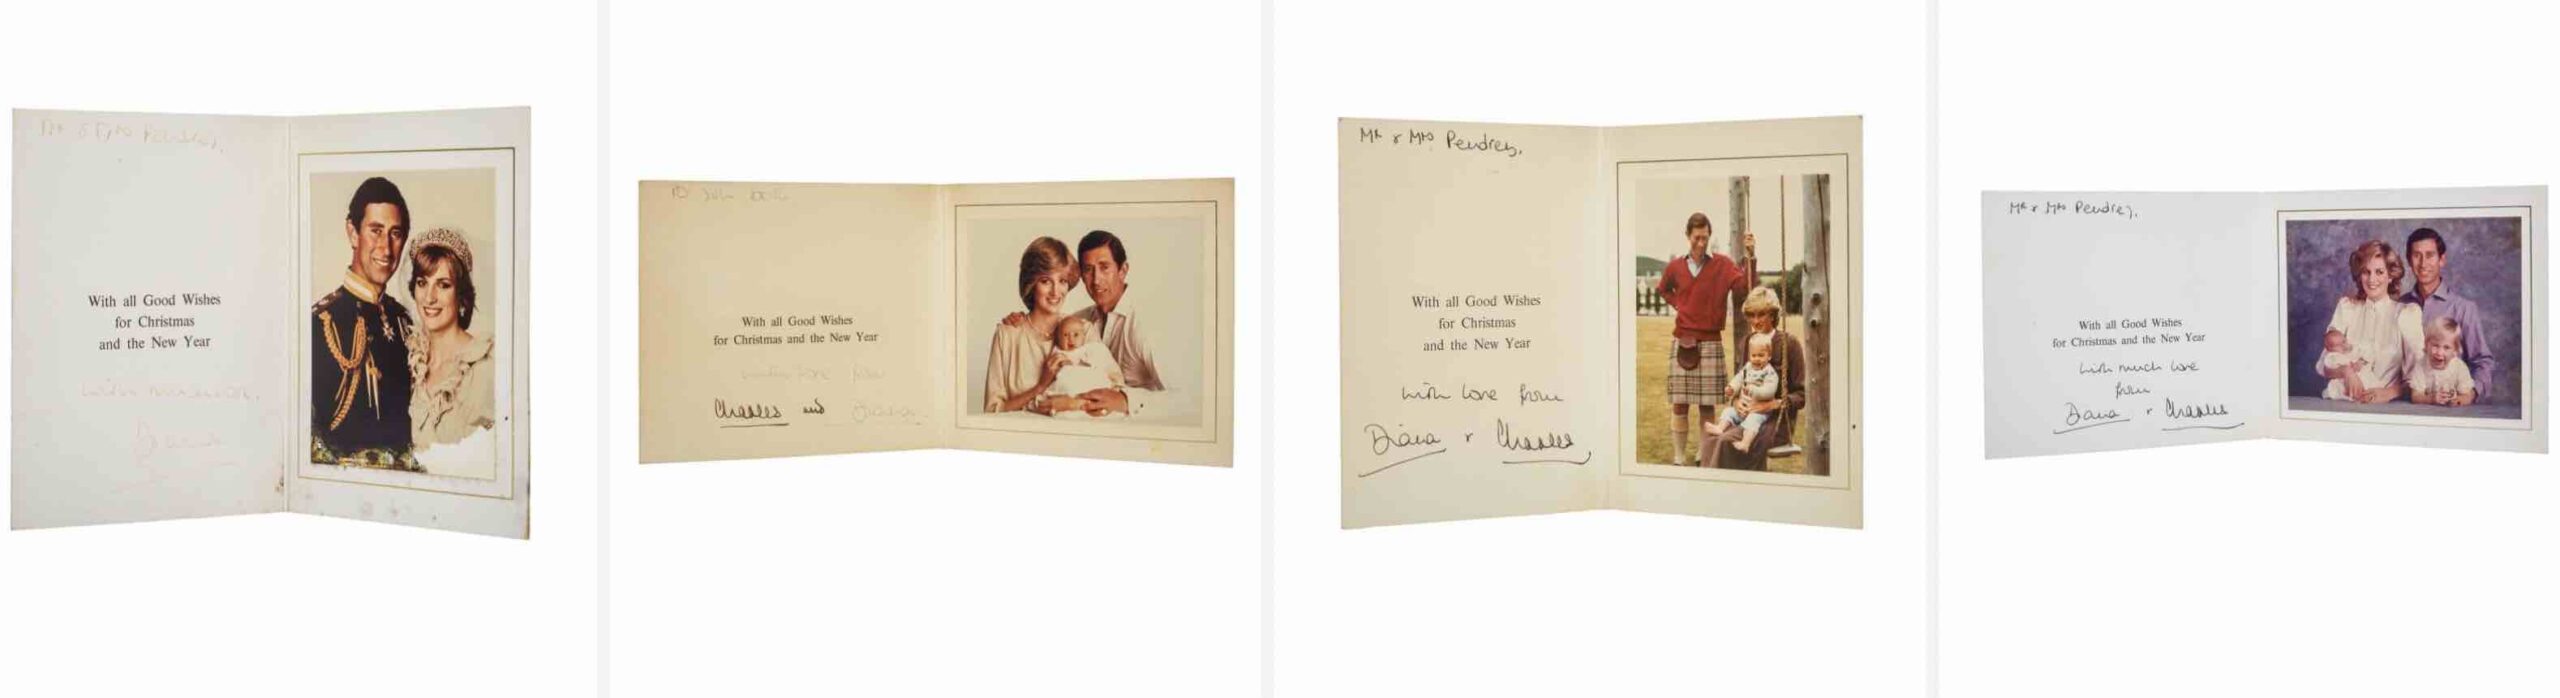 Cartões de Natal princesa Diana e Charles 